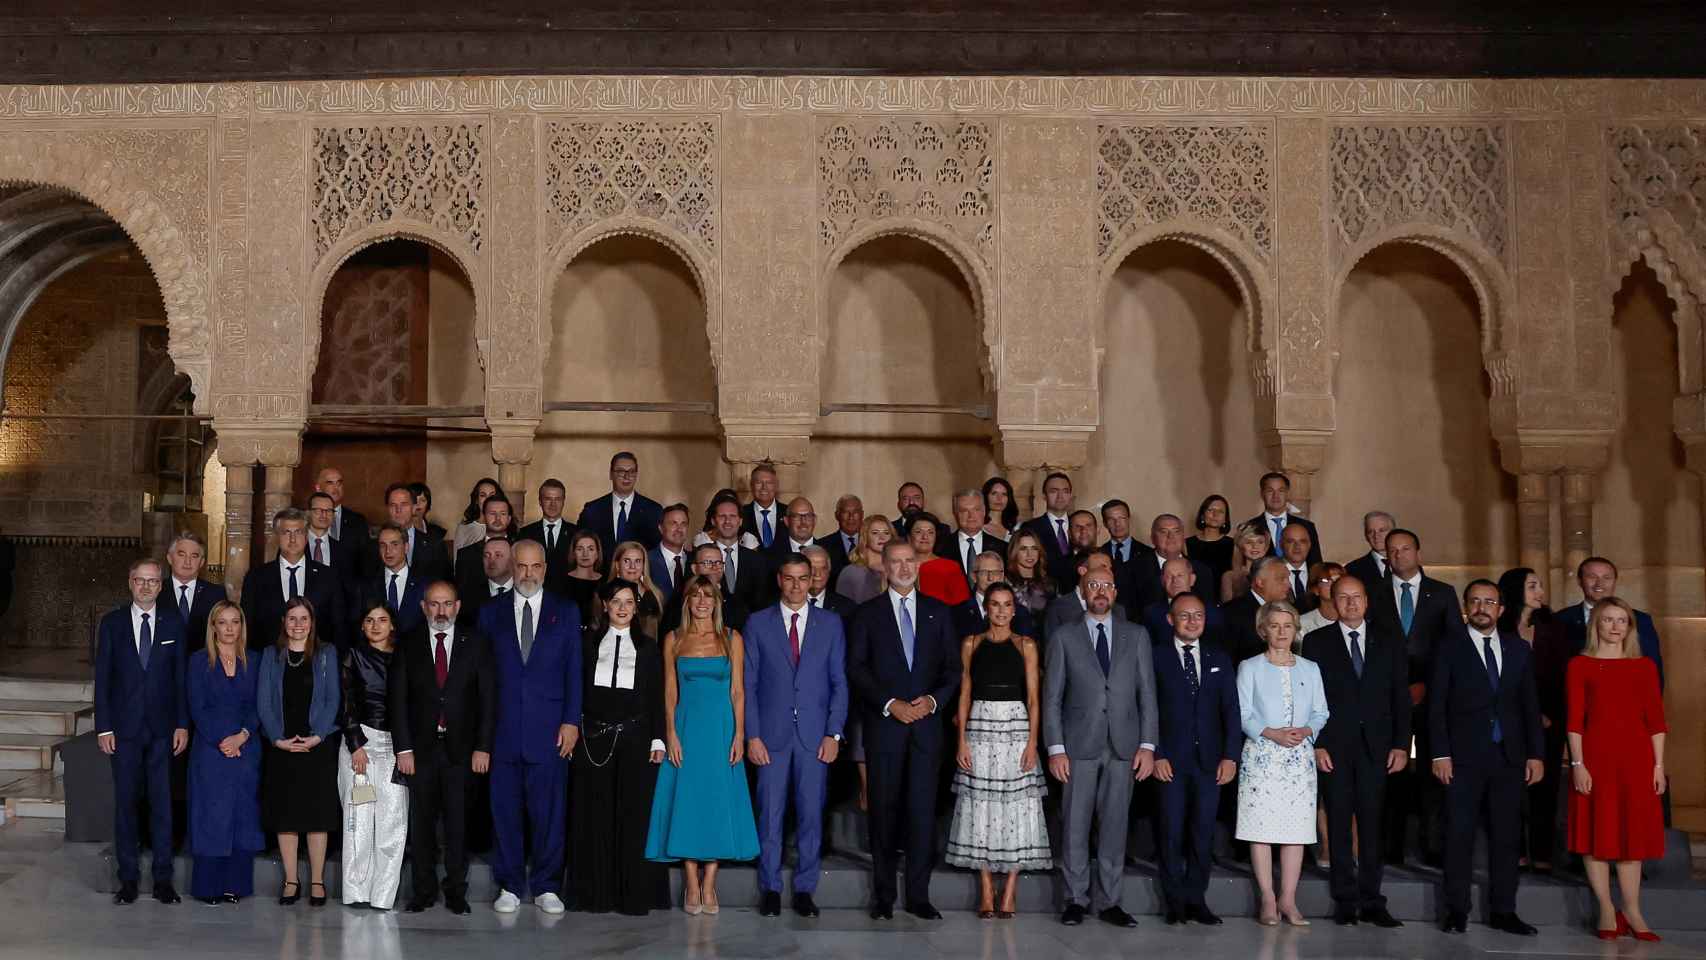 Los Reyes de España y los líderes de los países europeos posan para una foto de familia en el patio de los Leones de la Alhambra.